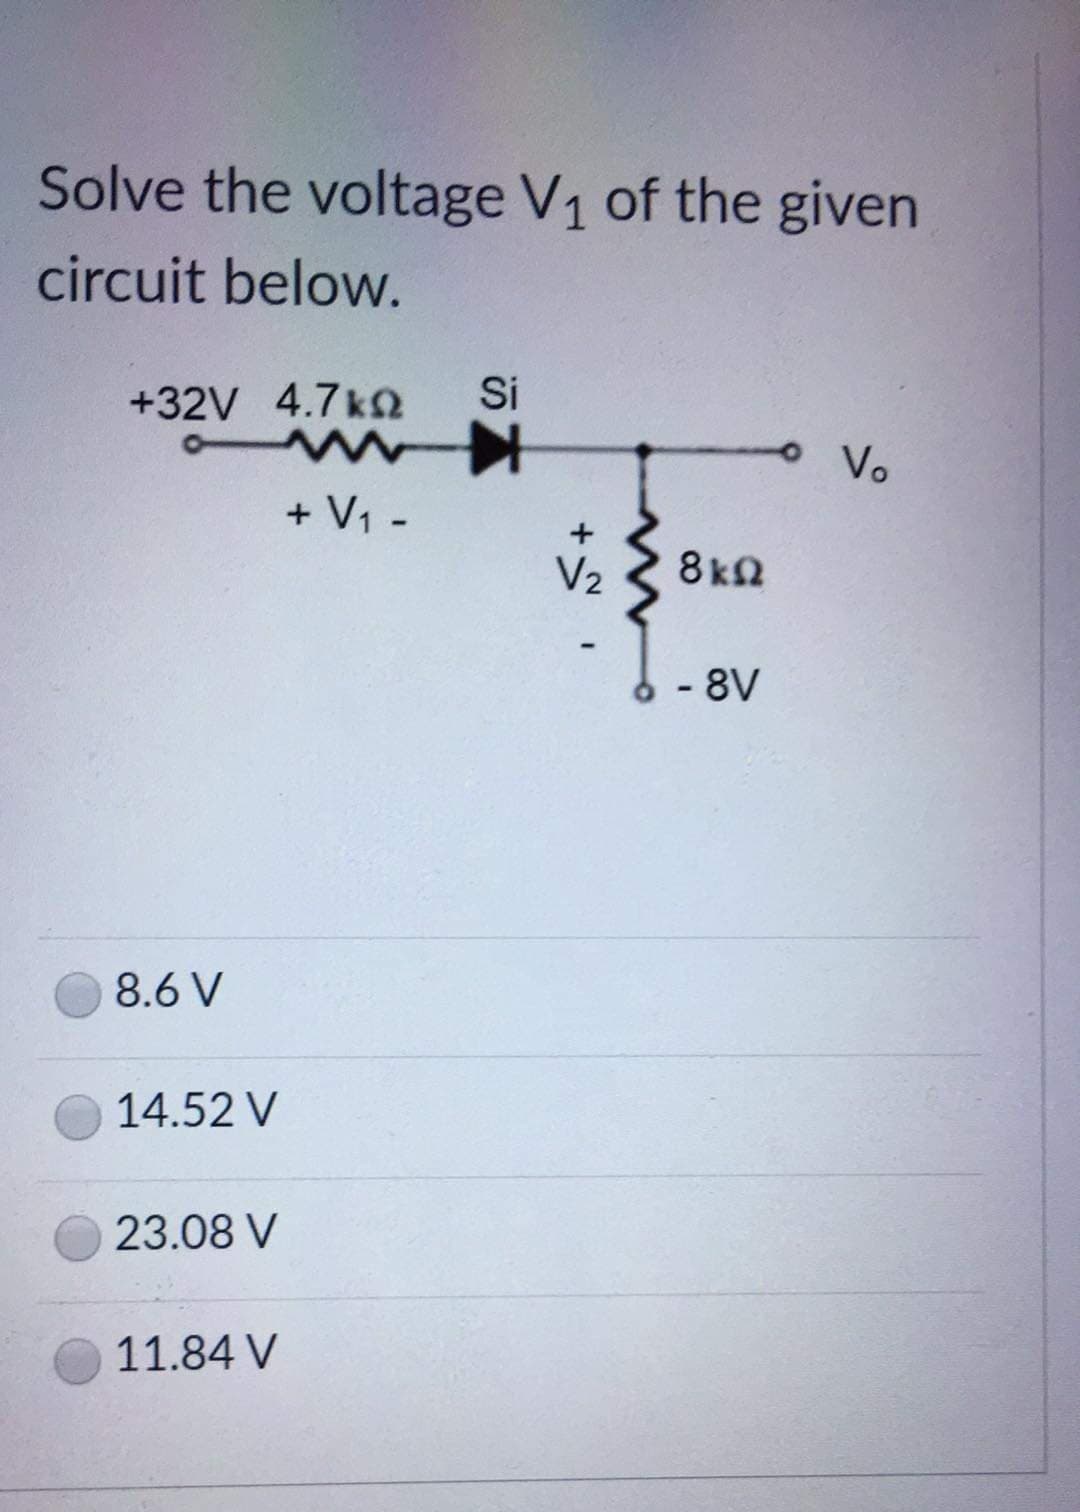 Solve the voltage V1 of the given
circuit below.
Si
+32V 4.7k
oVo
+ V1 -
V2
8kn
- 8V
8.6 V
14.52 V
23.08 V
11.84 V
